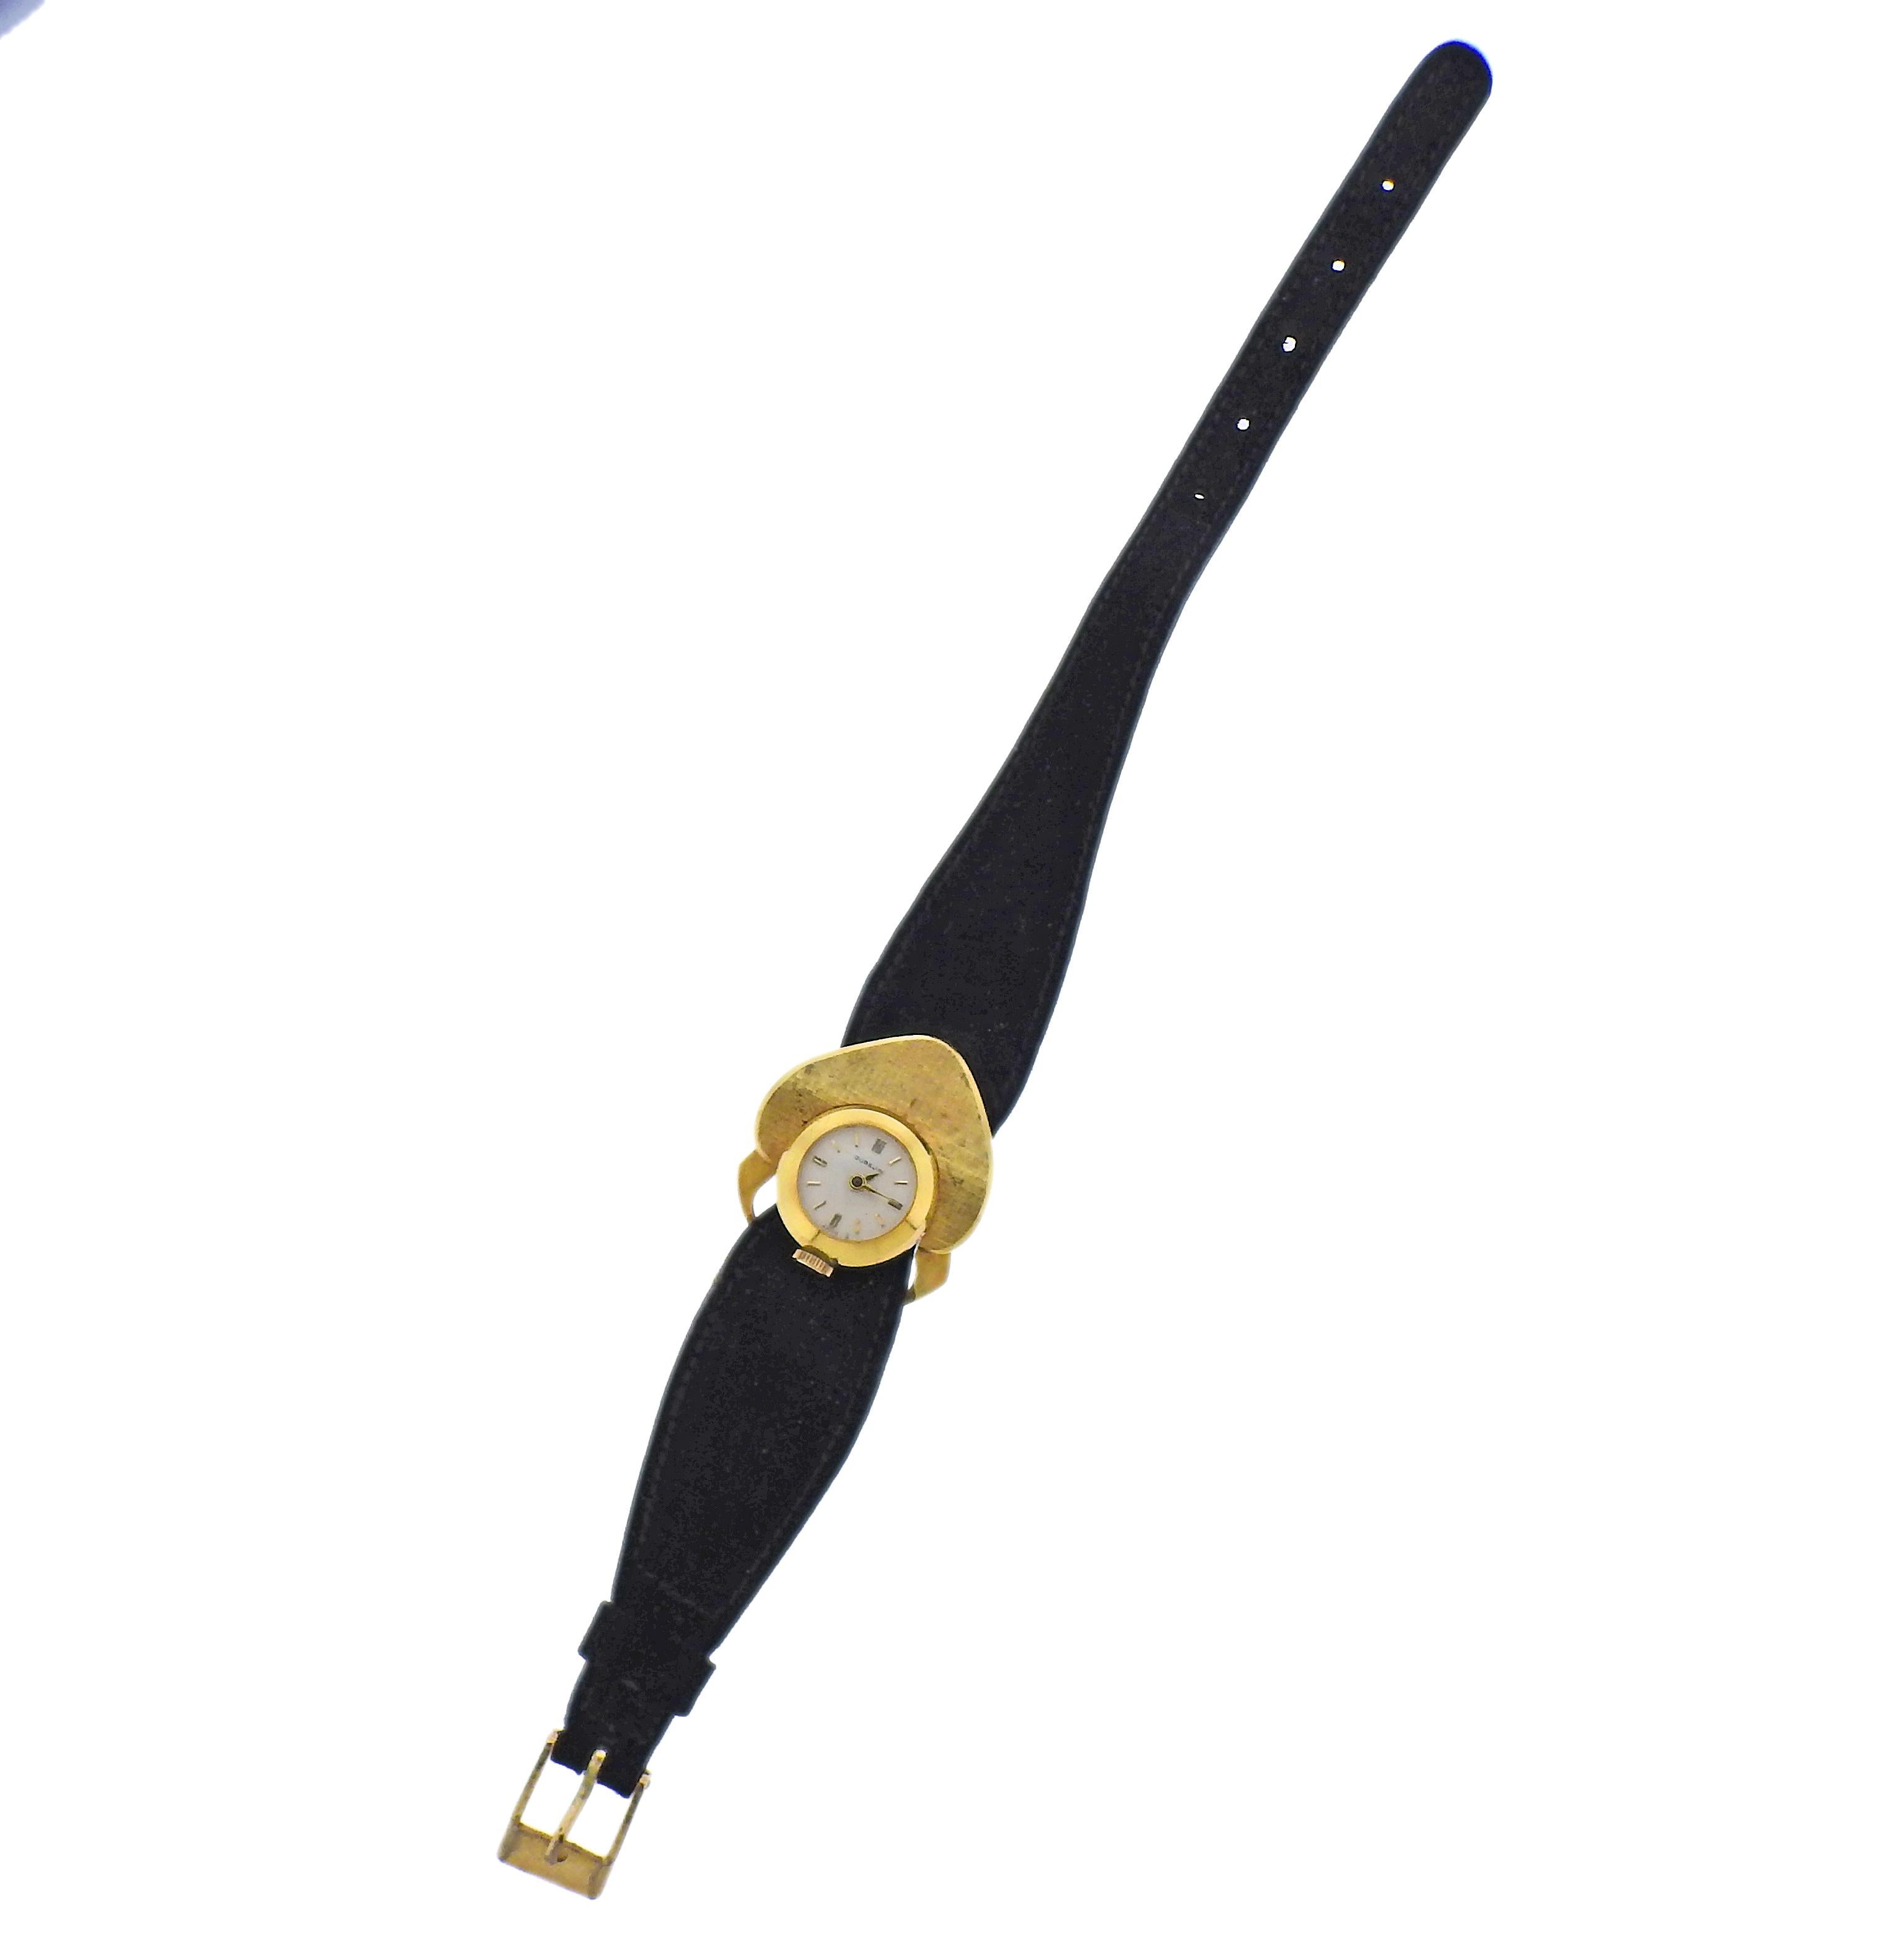 Montre Gubelin pour dame en or 18 carats des années 1970, avec bracelet en cuir velours et boucle en or. Le boîtier mesure 29 mm x 32 mm. La bande mesure 8